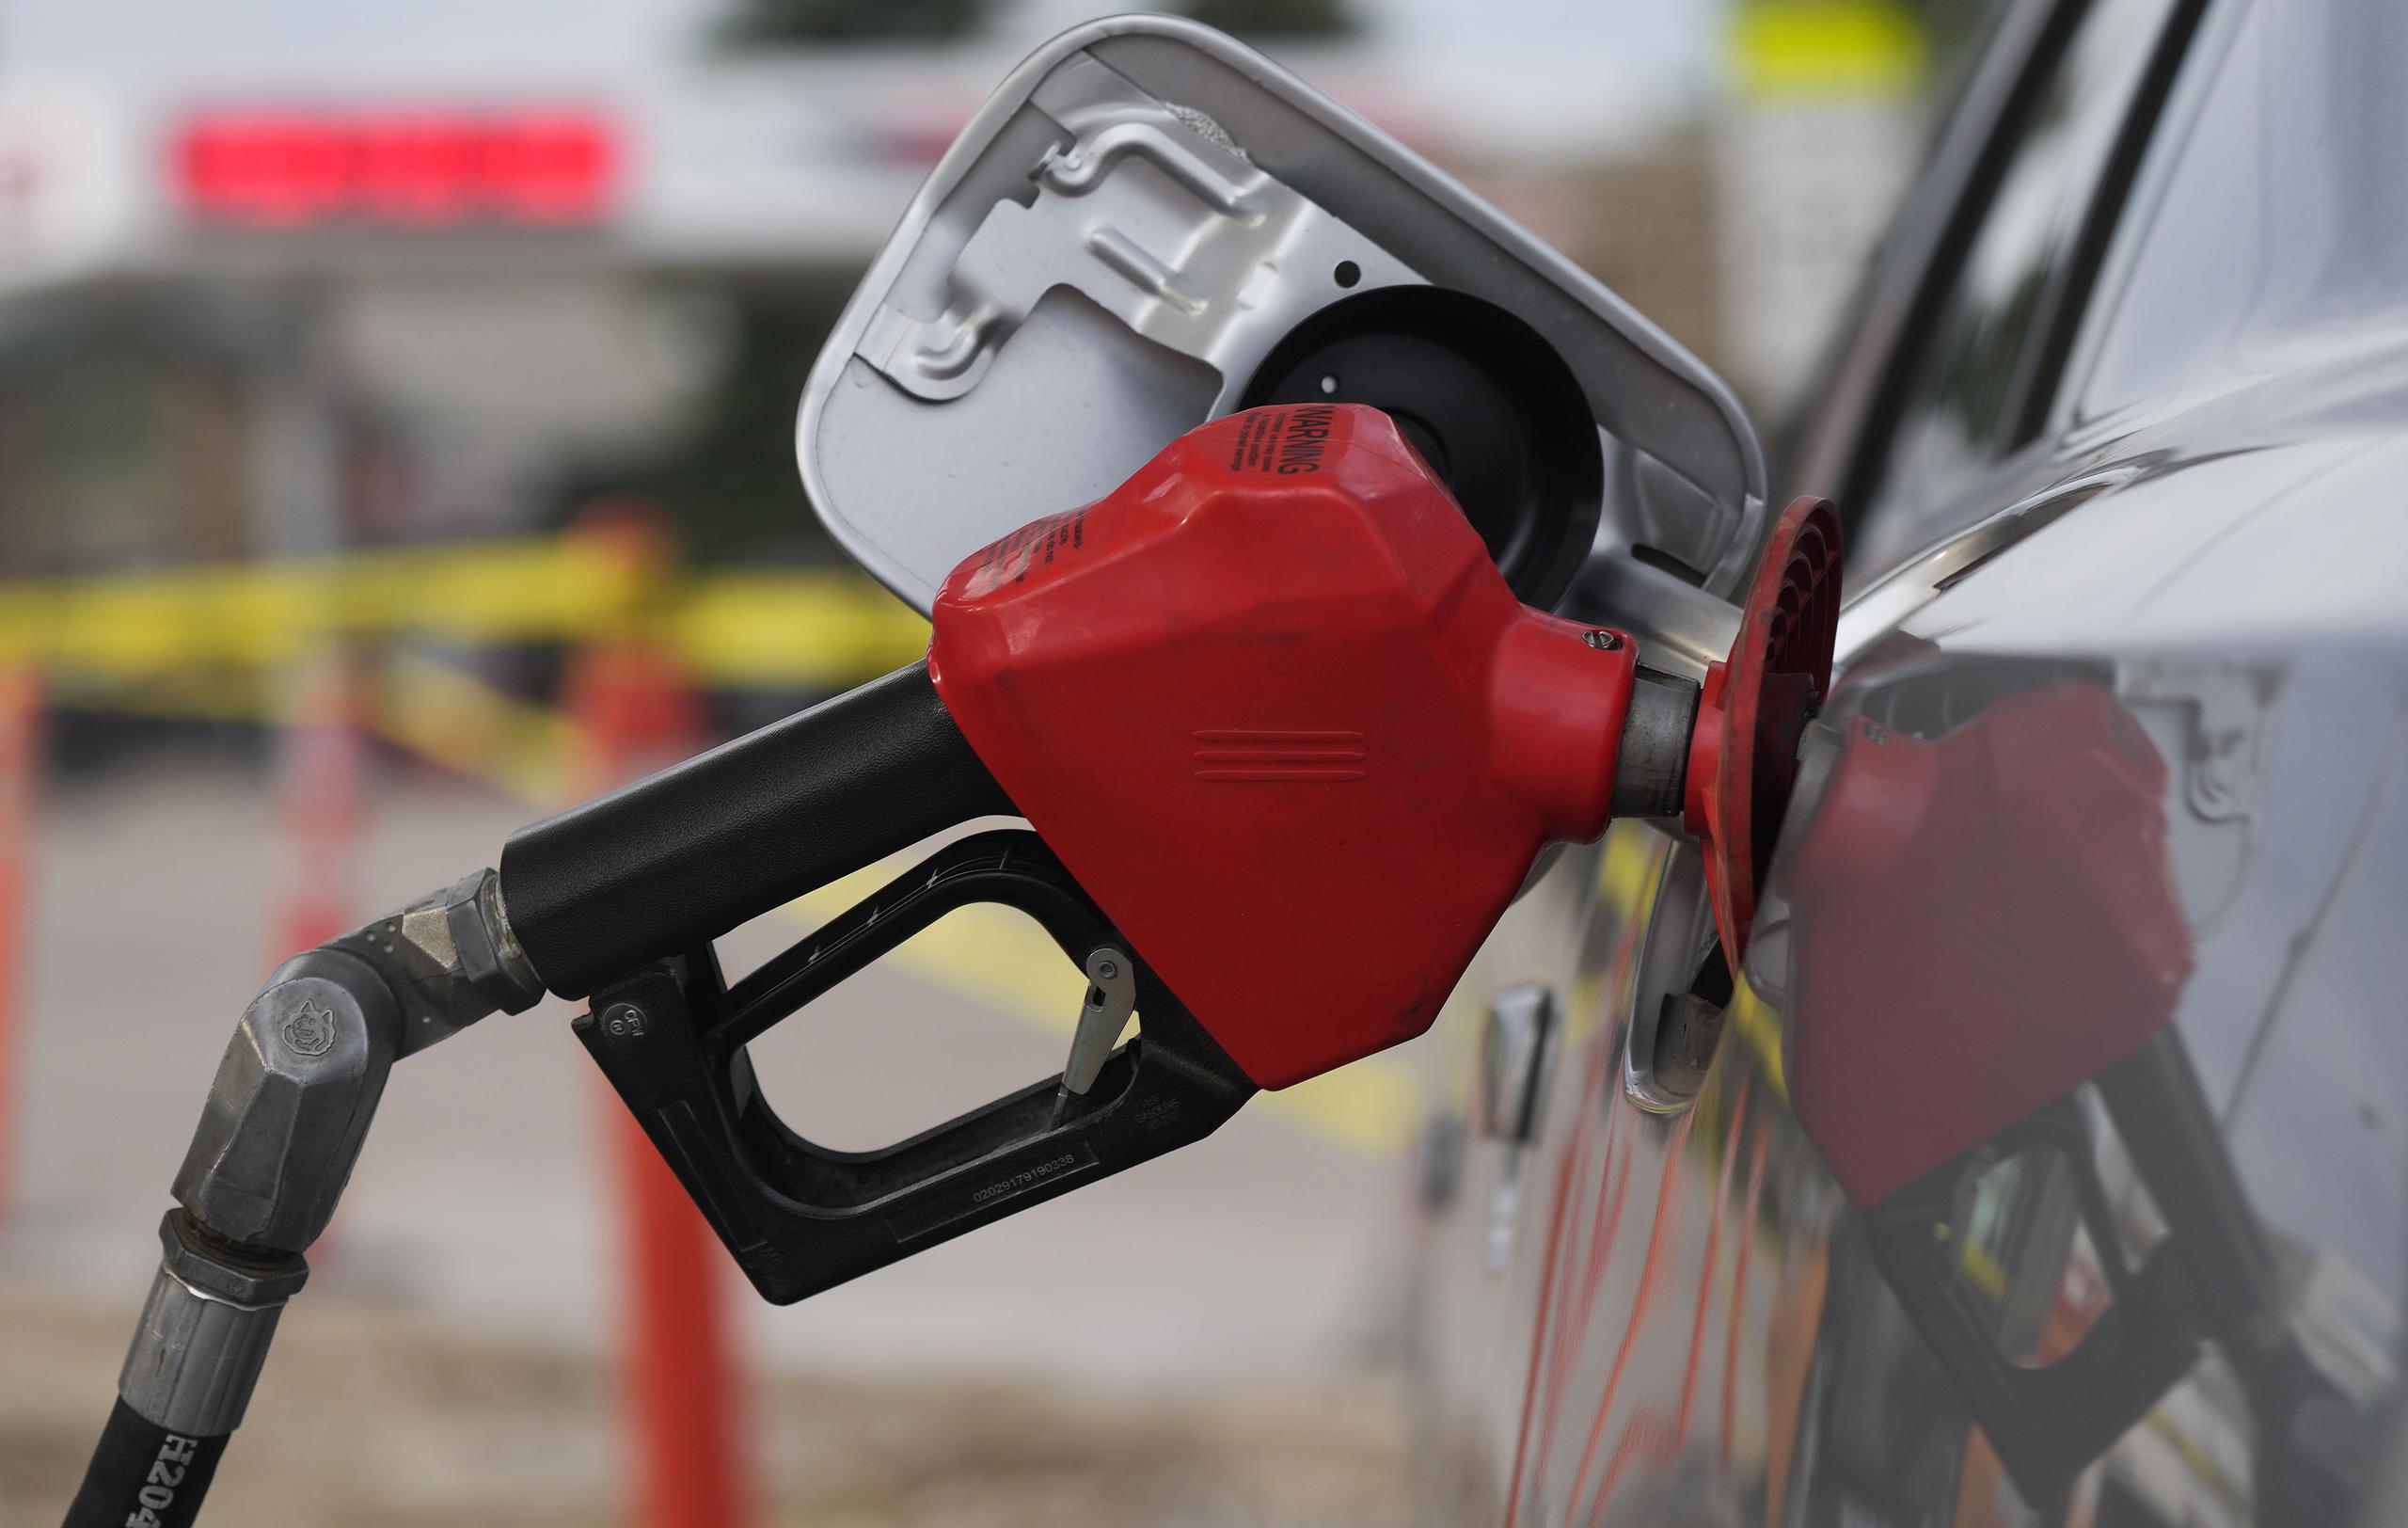 A nivel nacional, el precio más alto de la gasolina regular se encontraba en Los Ángeles (5.65 dólares por galón) y el más bajo en Baton Rouge, Luisiana (3.90 dólares el galón).